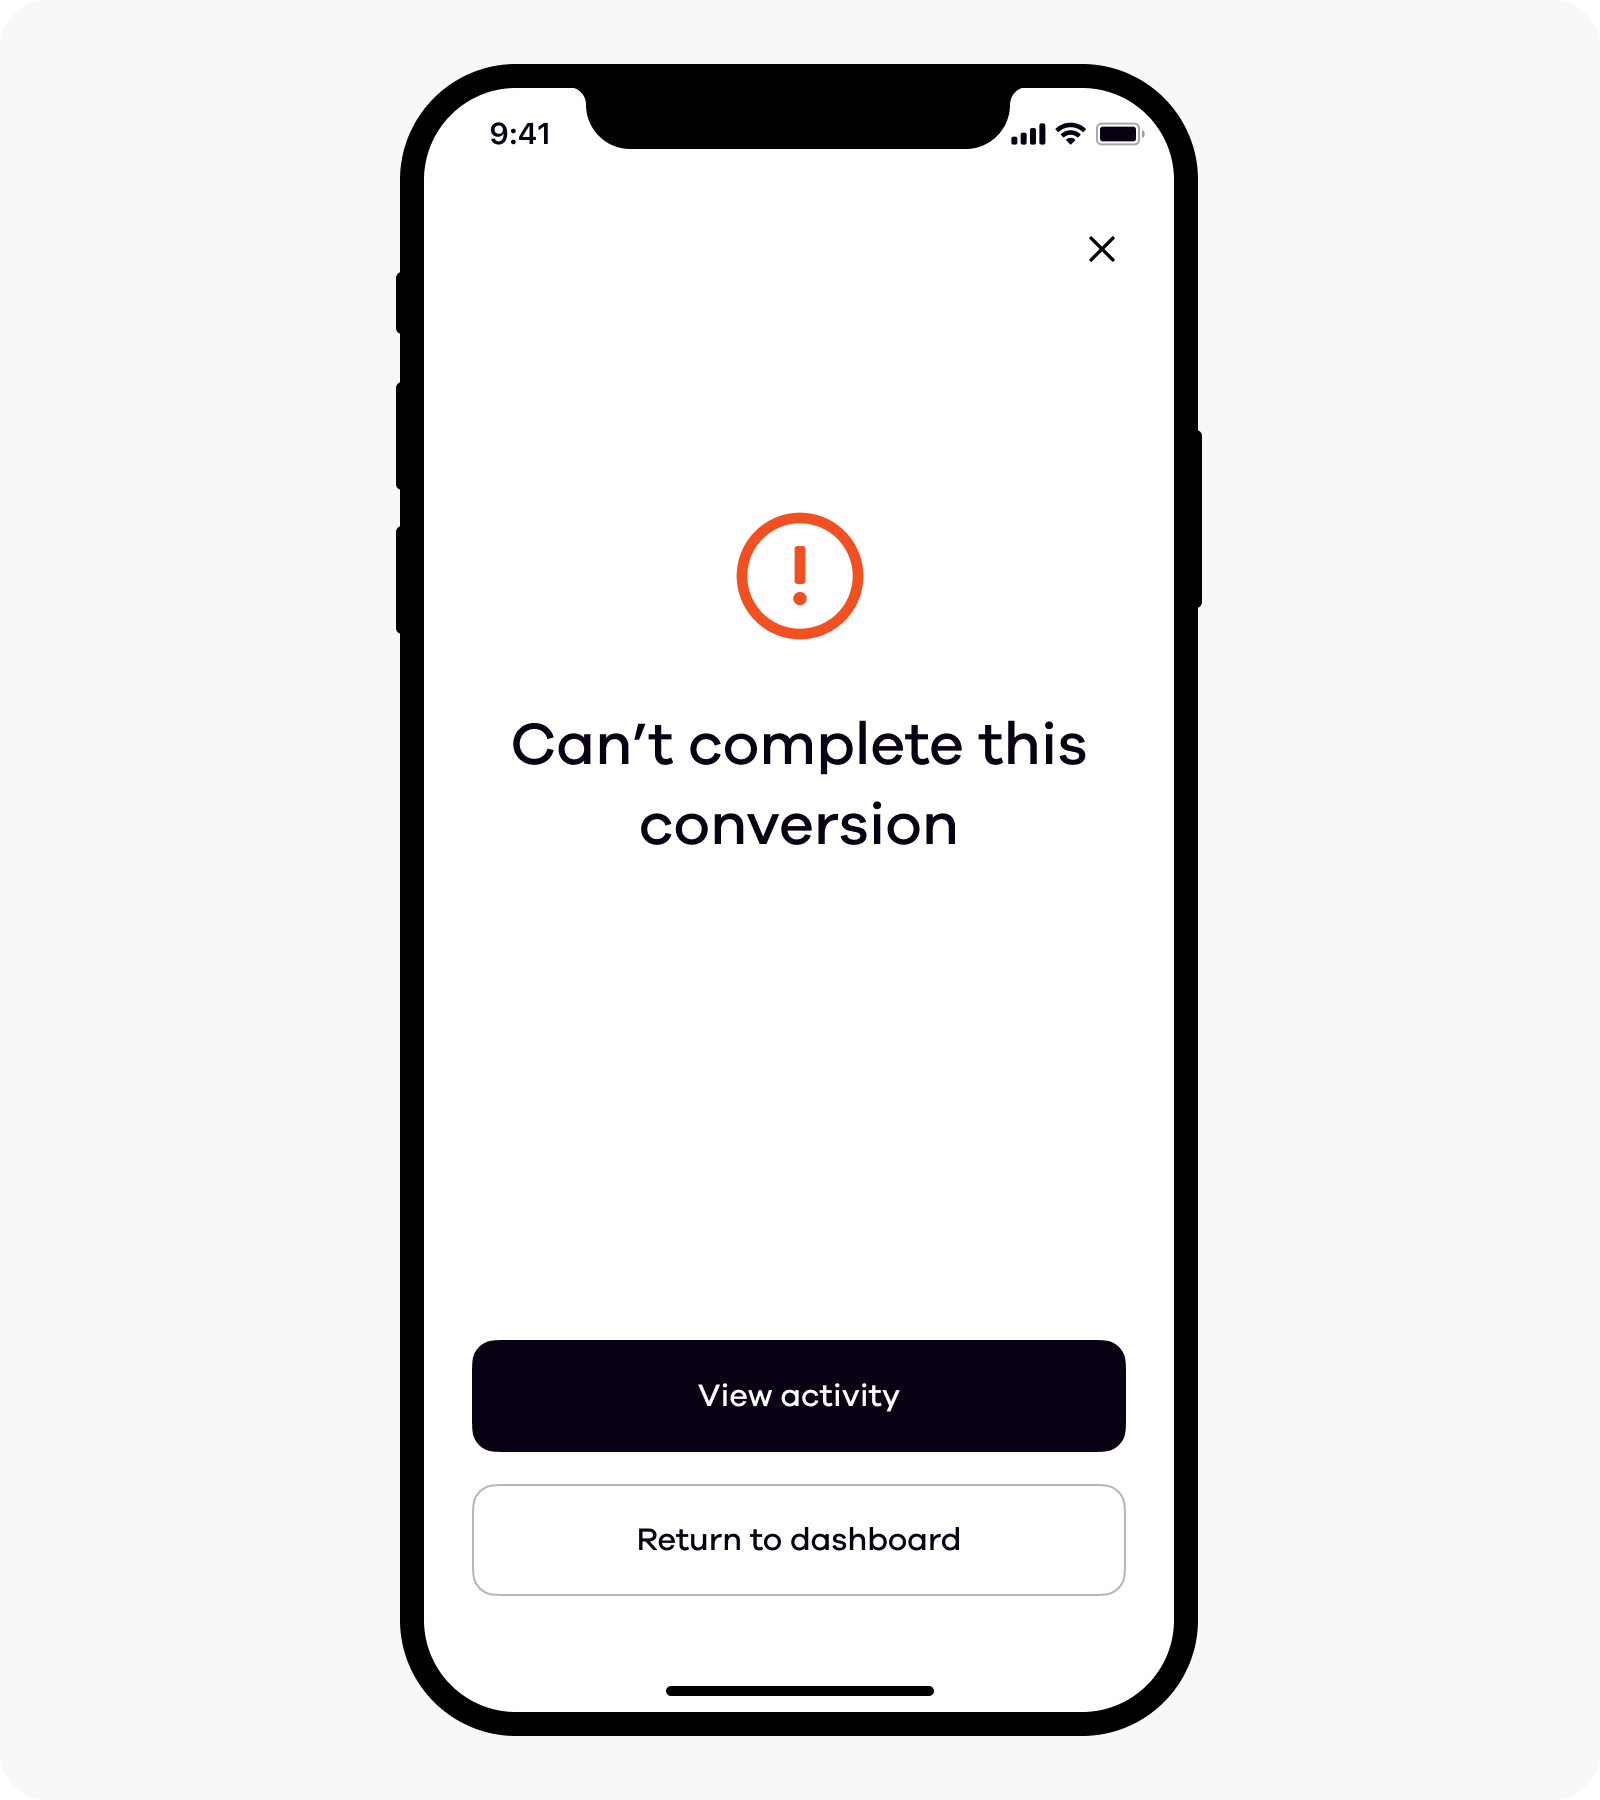 Okcoin app Convert error message